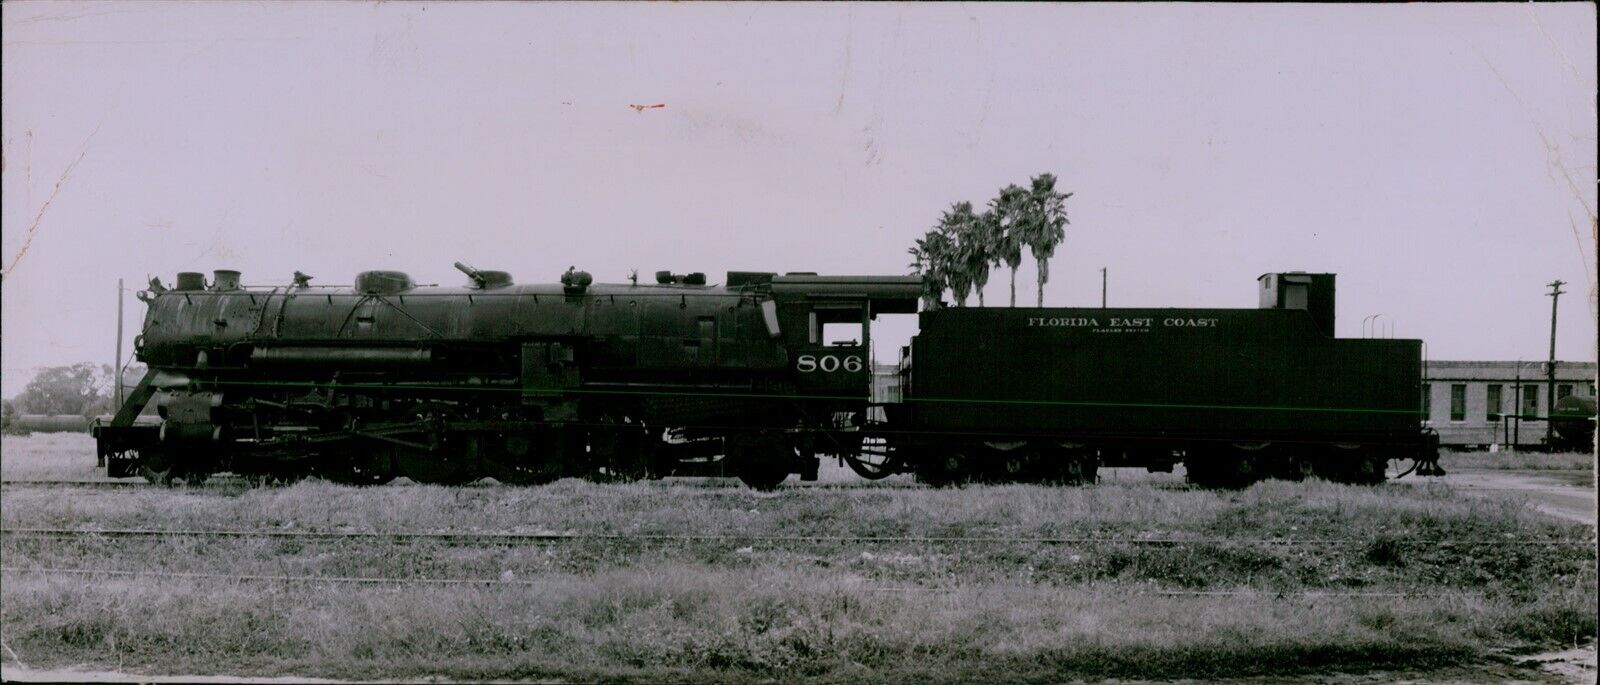 LG867 1952 Original Harry Wolfe Photo FLORIDA EAST COAST Railway Vintage Train